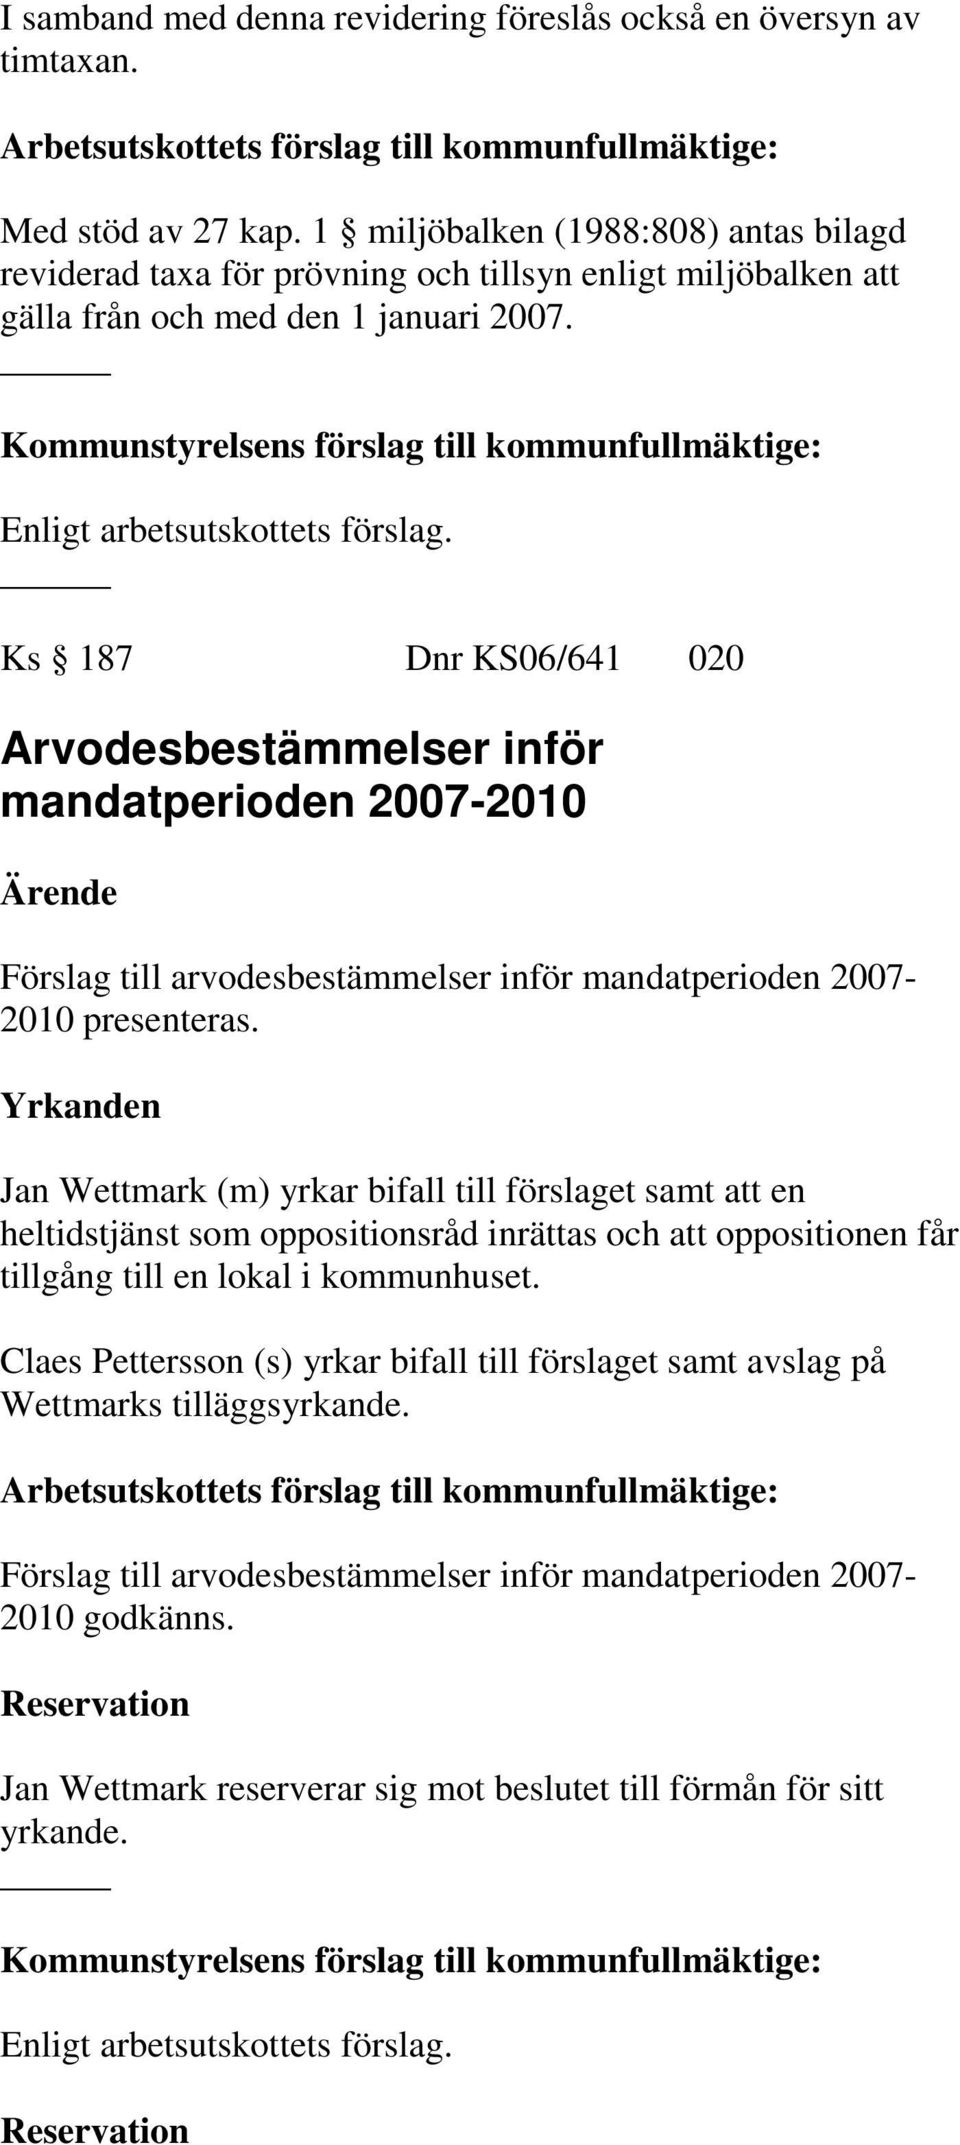 Ks 187 Dnr KS06/641 020 Arvodesbestämmelser inför mandatperioden 2007-2010 Förslag till arvodesbestämmelser inför mandatperioden 2007-2010 presenteras.